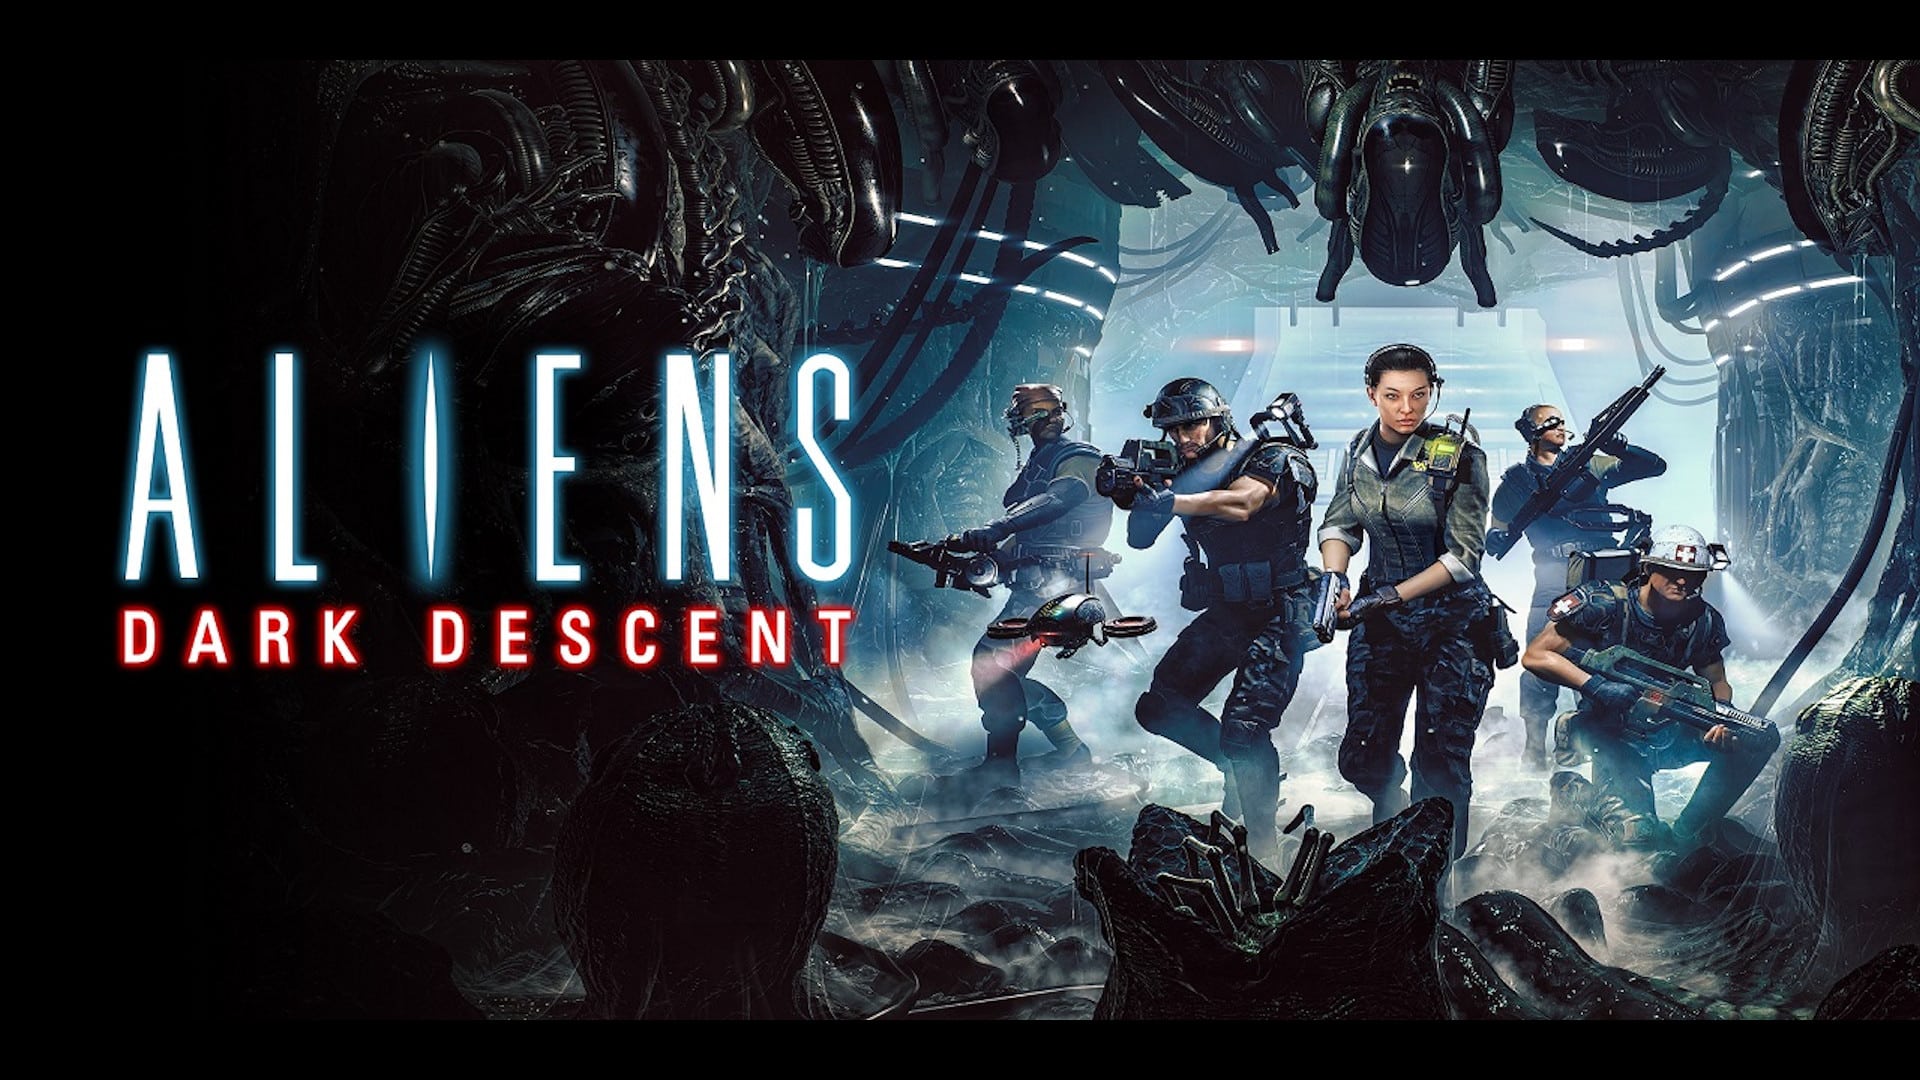 Aliens: Dark Descent: The Movie